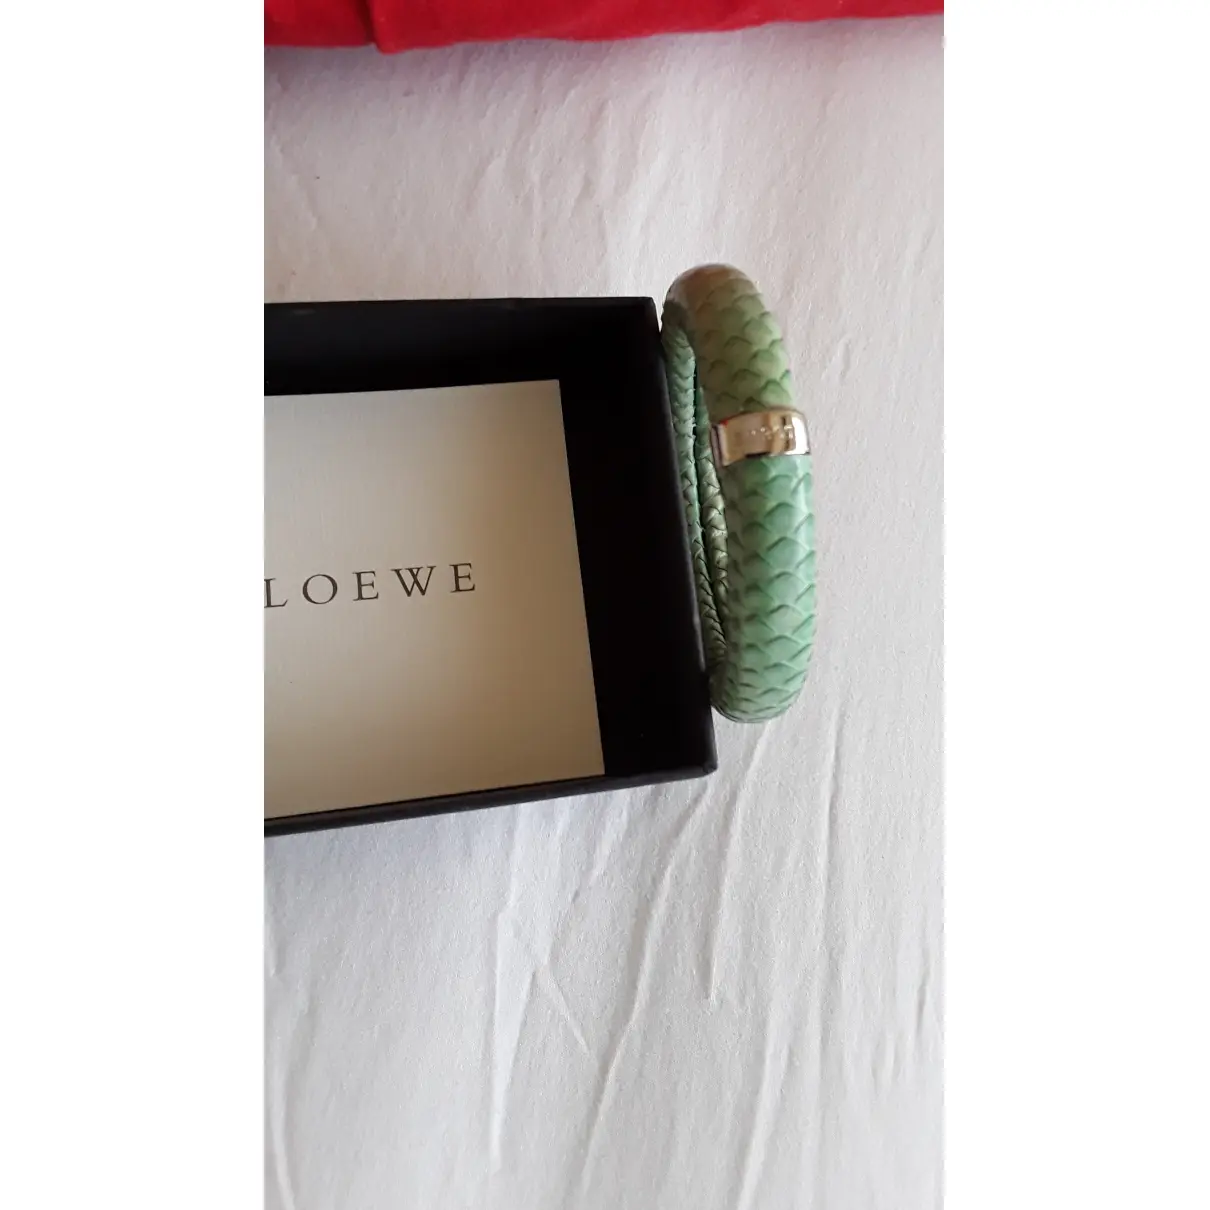 Buy Loewe Leather bracelet online